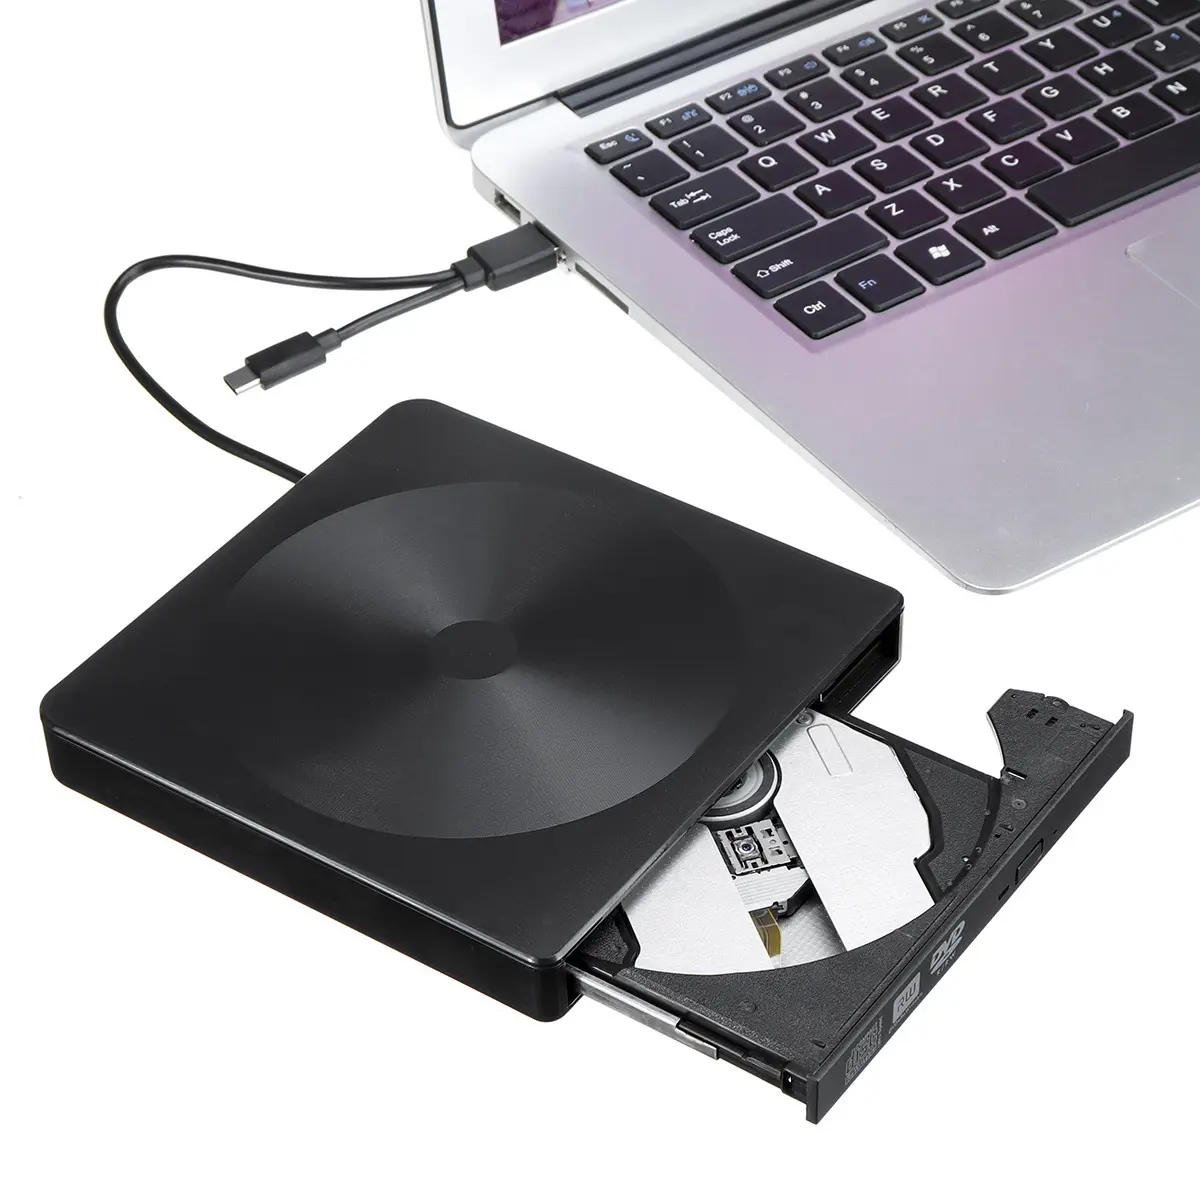 Vente en gros USB 3.0 lecteur de CD externe Portable CD Dvd Rw lecteur mince DVD Rom graveur lecteur optique pour ordinateur portable PC de bureau